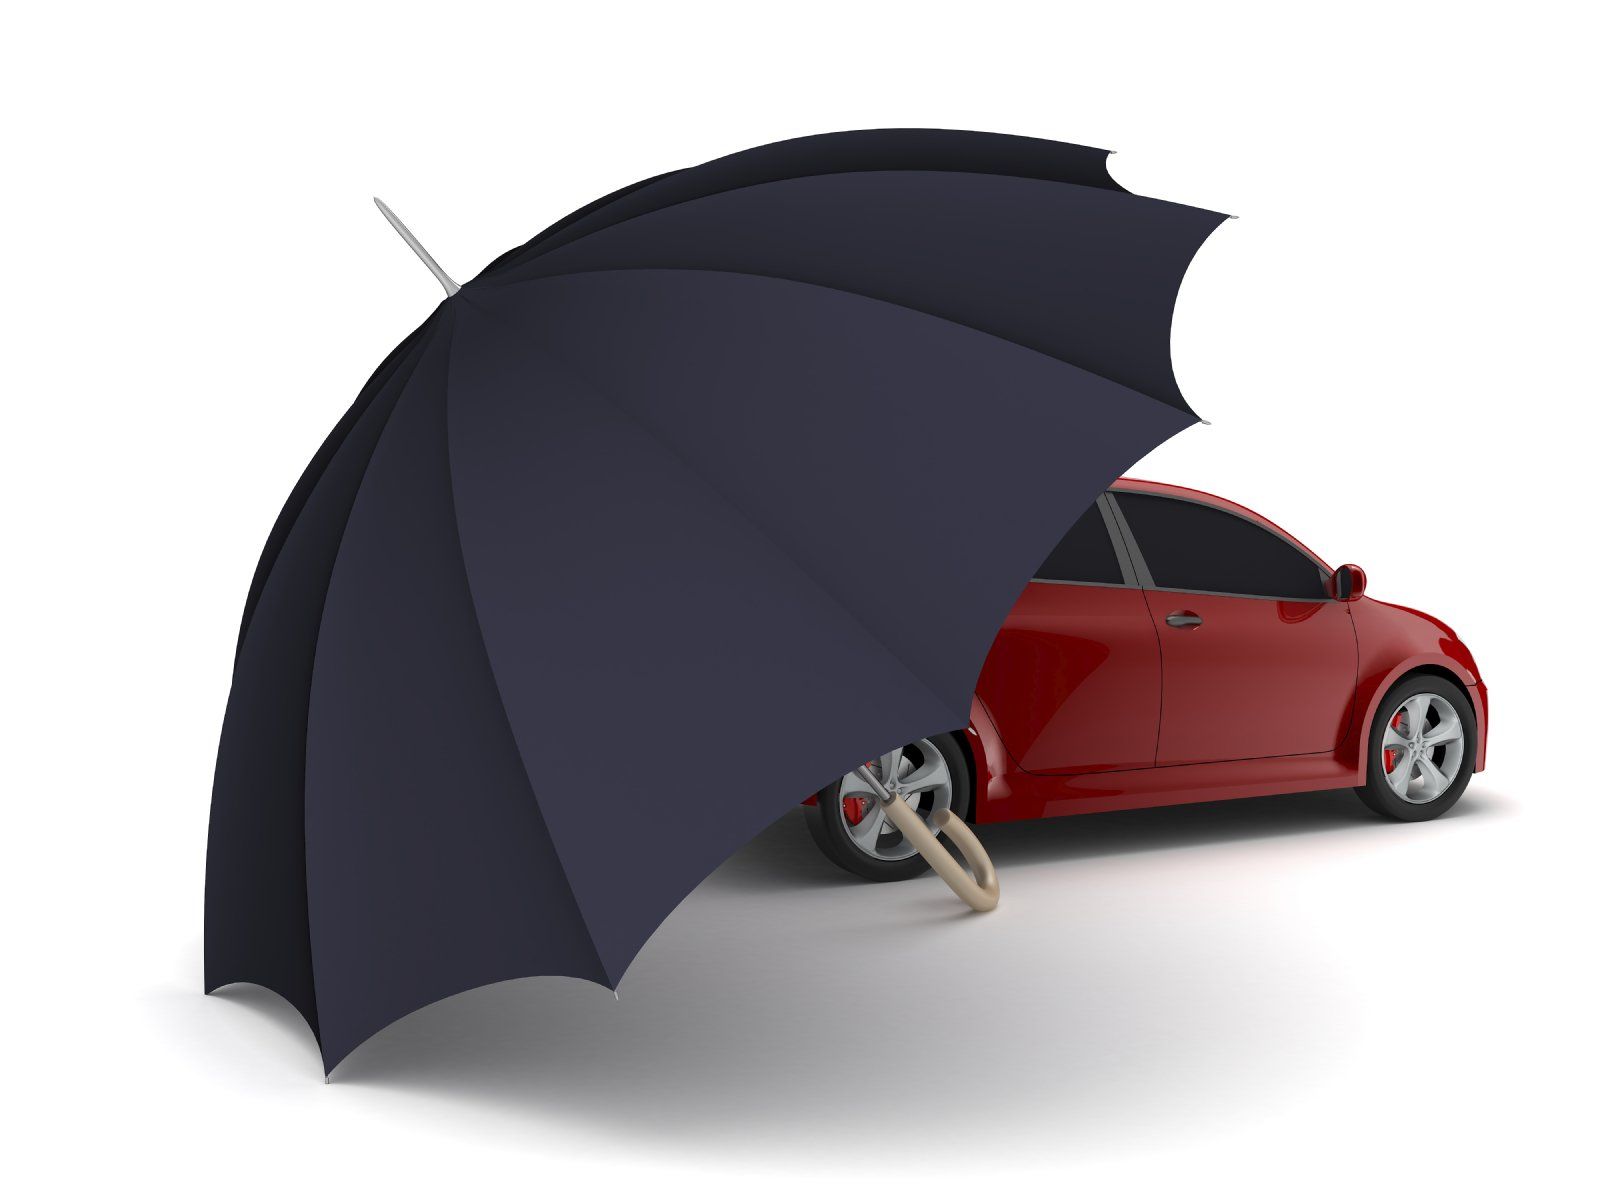 Regenschirm deckt ein Auto ab